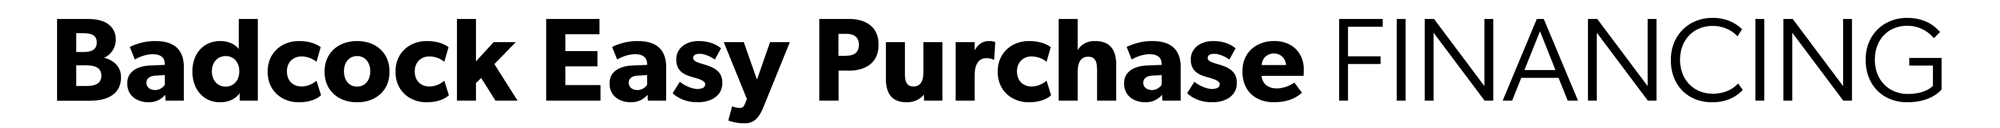 Badcock Logo